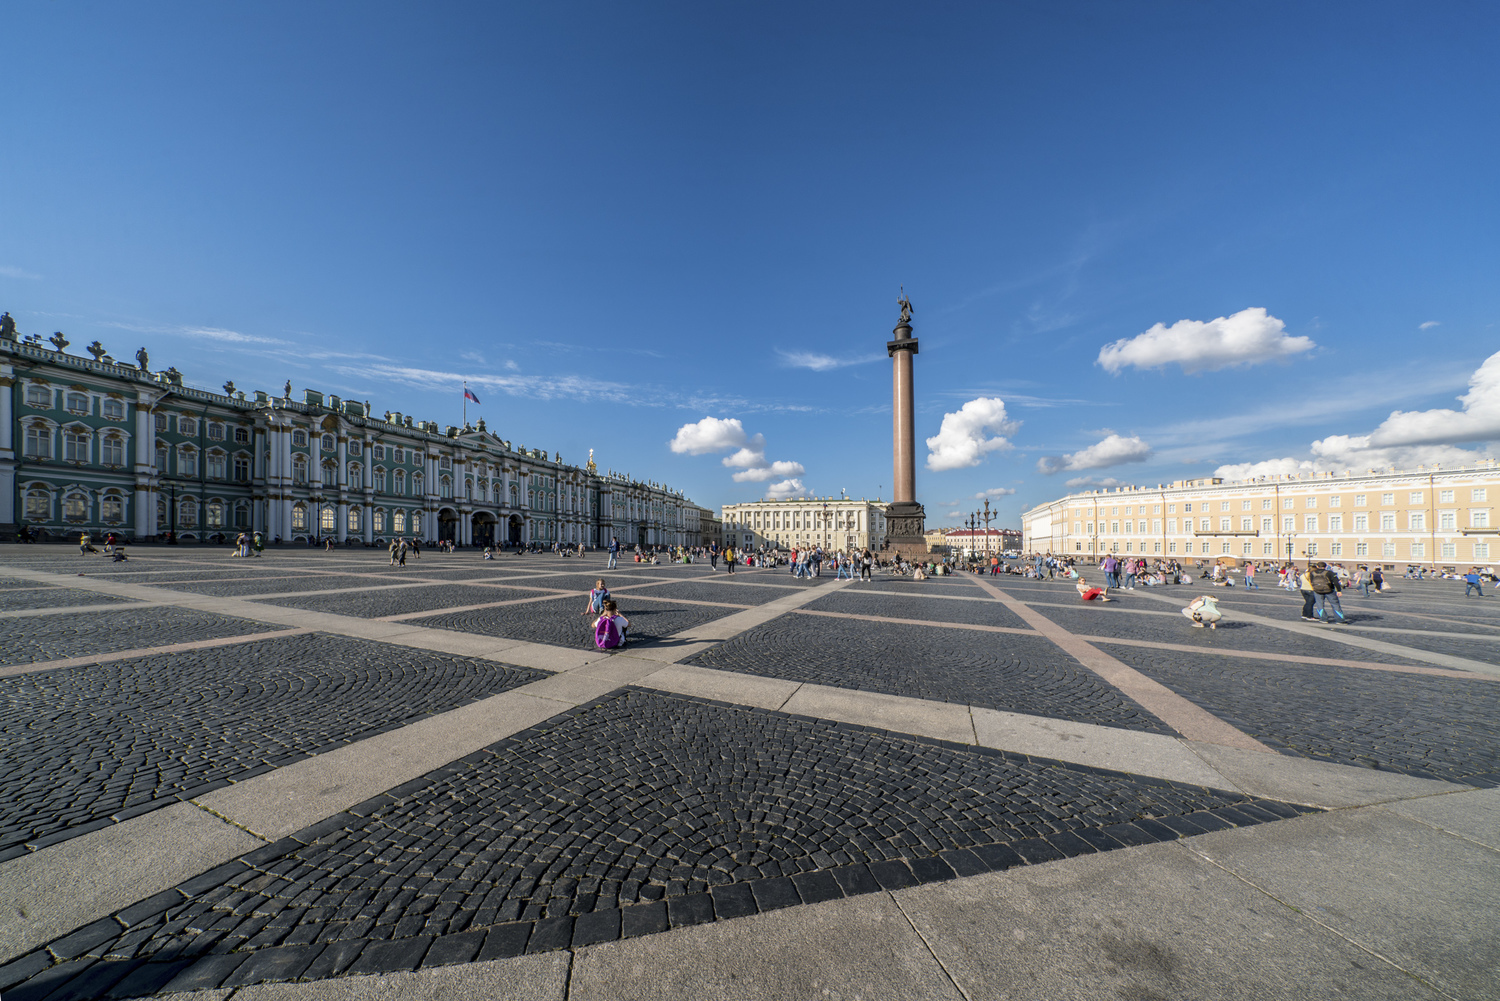 Dvortsovaya Square, St. Petersburg.